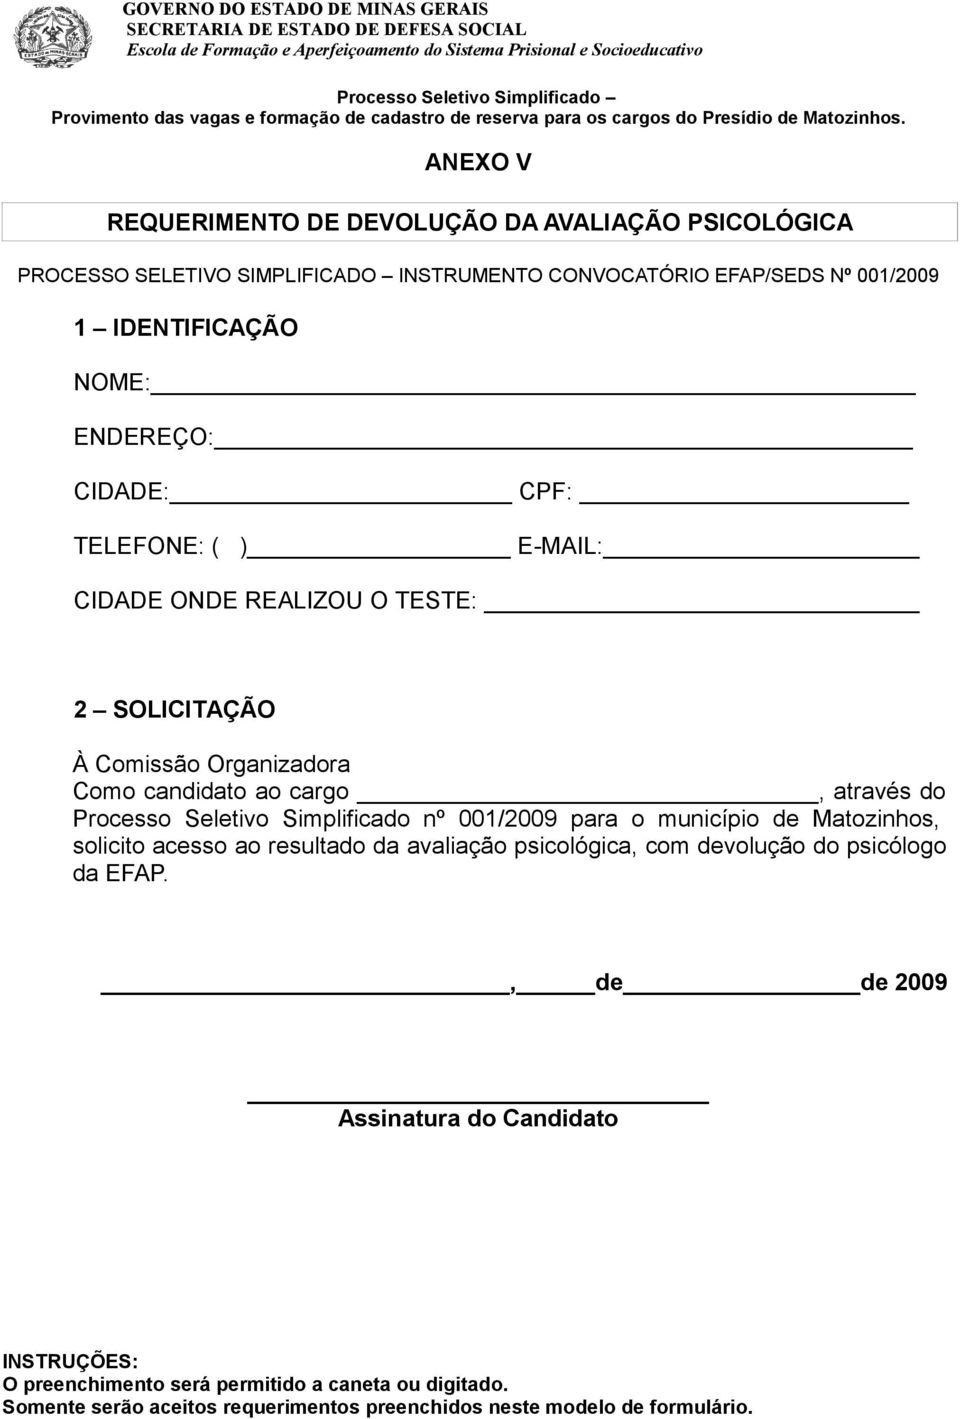 Simplificado nº 001/2009 para o município de Matozinhos, solicito acesso ao resultado da avaliação psicológica, com devolução